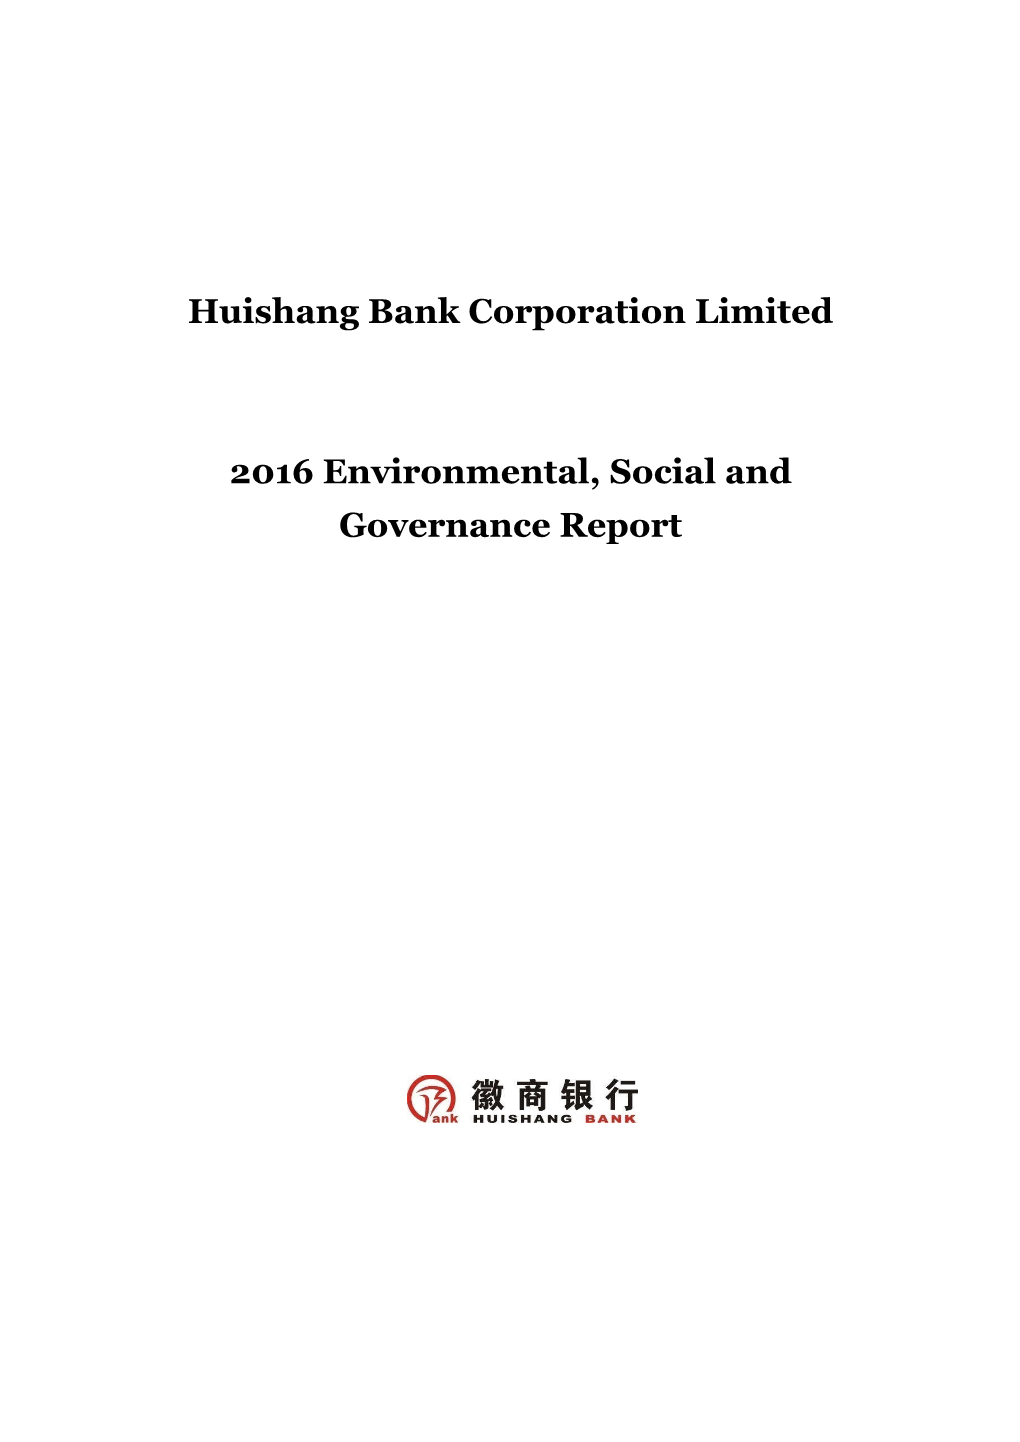 Huishang Bank Corporation Limited 2016 Environmental, Social And